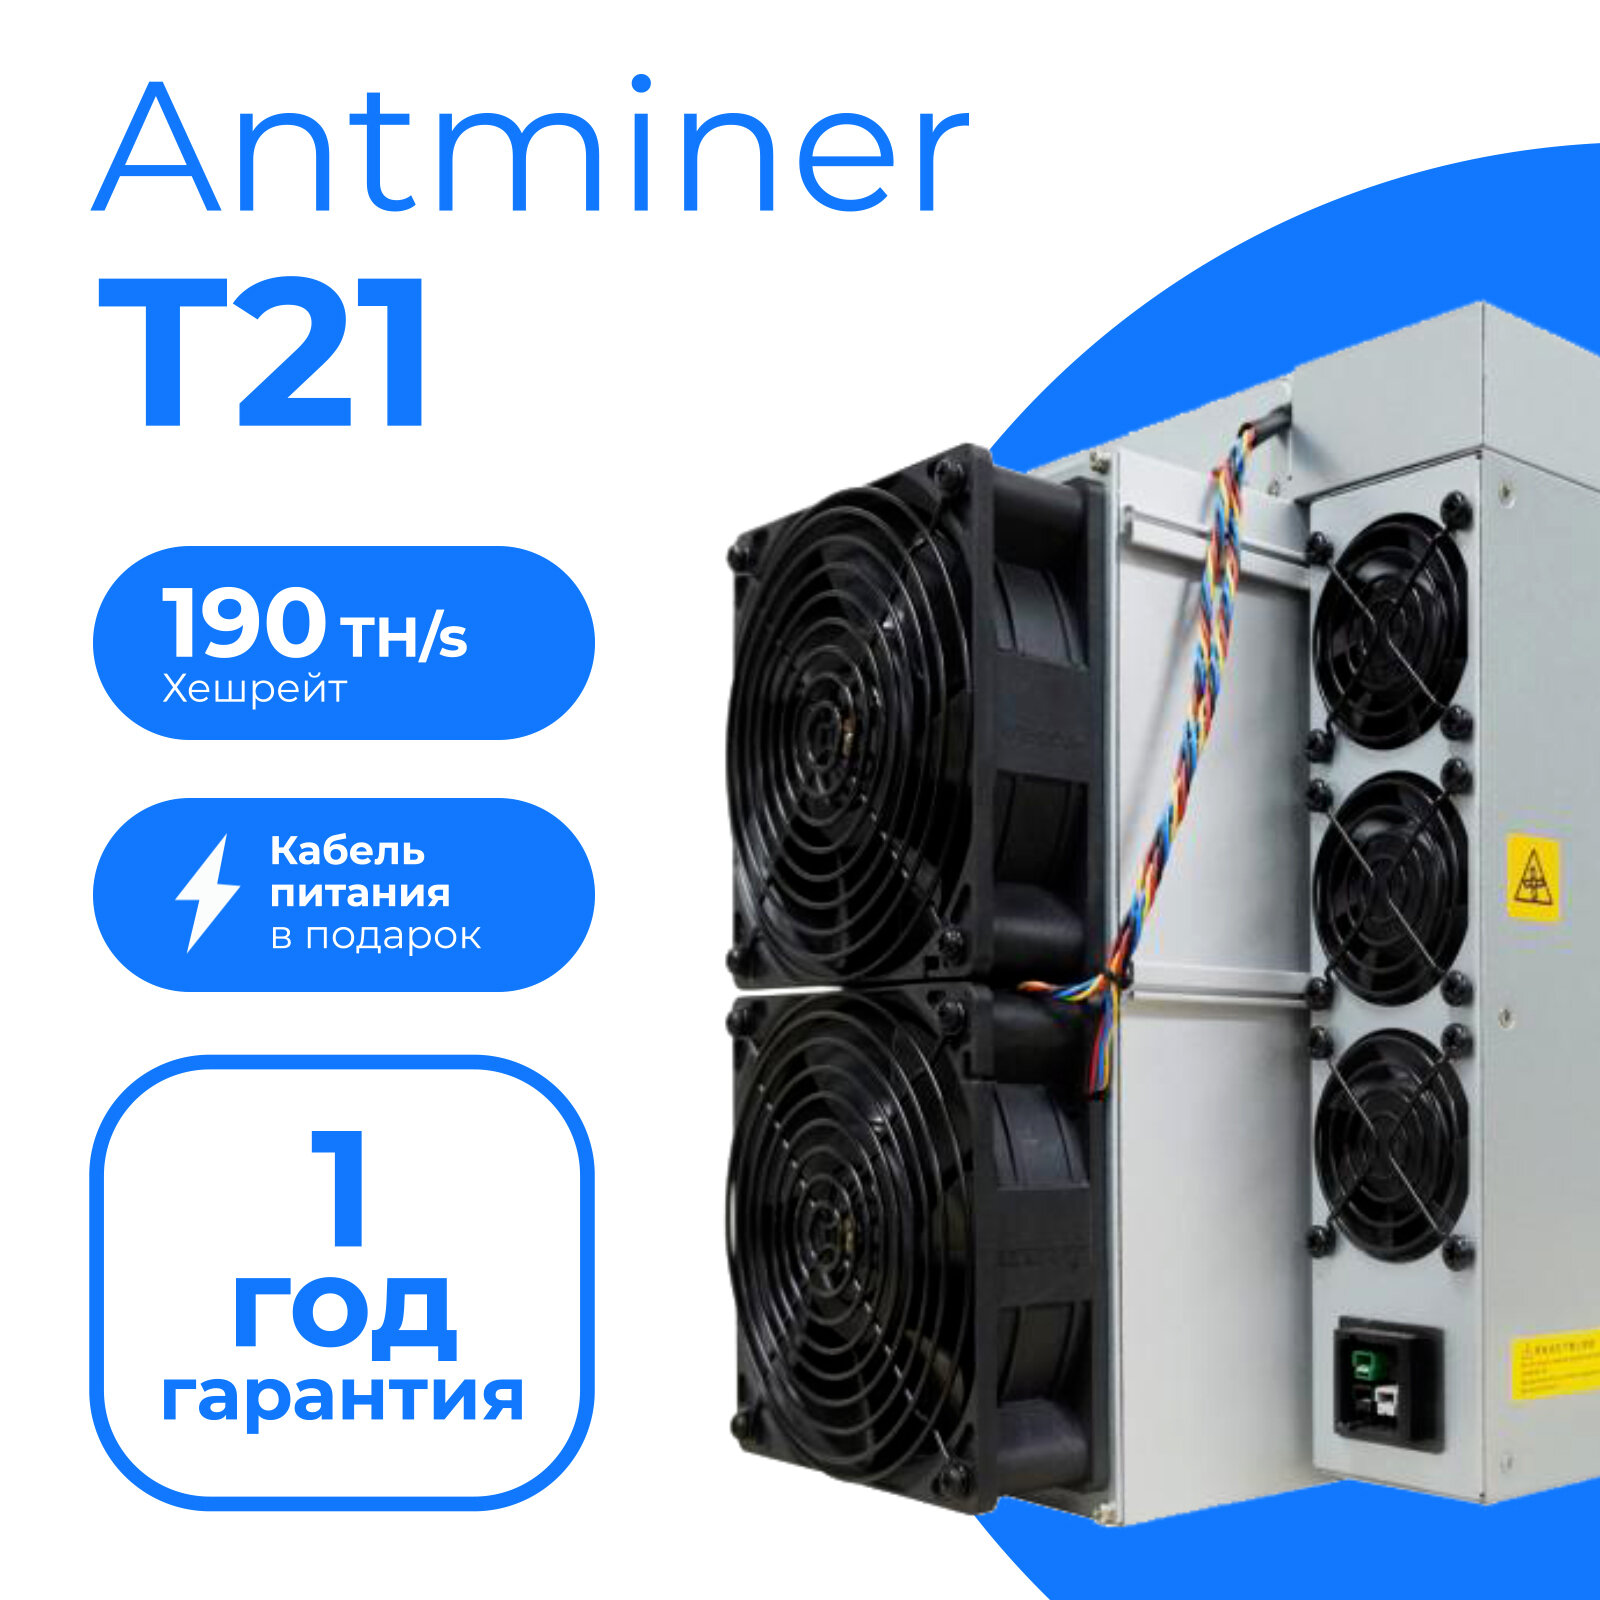 Асик Bitmain Antminer T21-190Th/s + 2 кабеля в комплекте / майнер для добычи криптовалюты